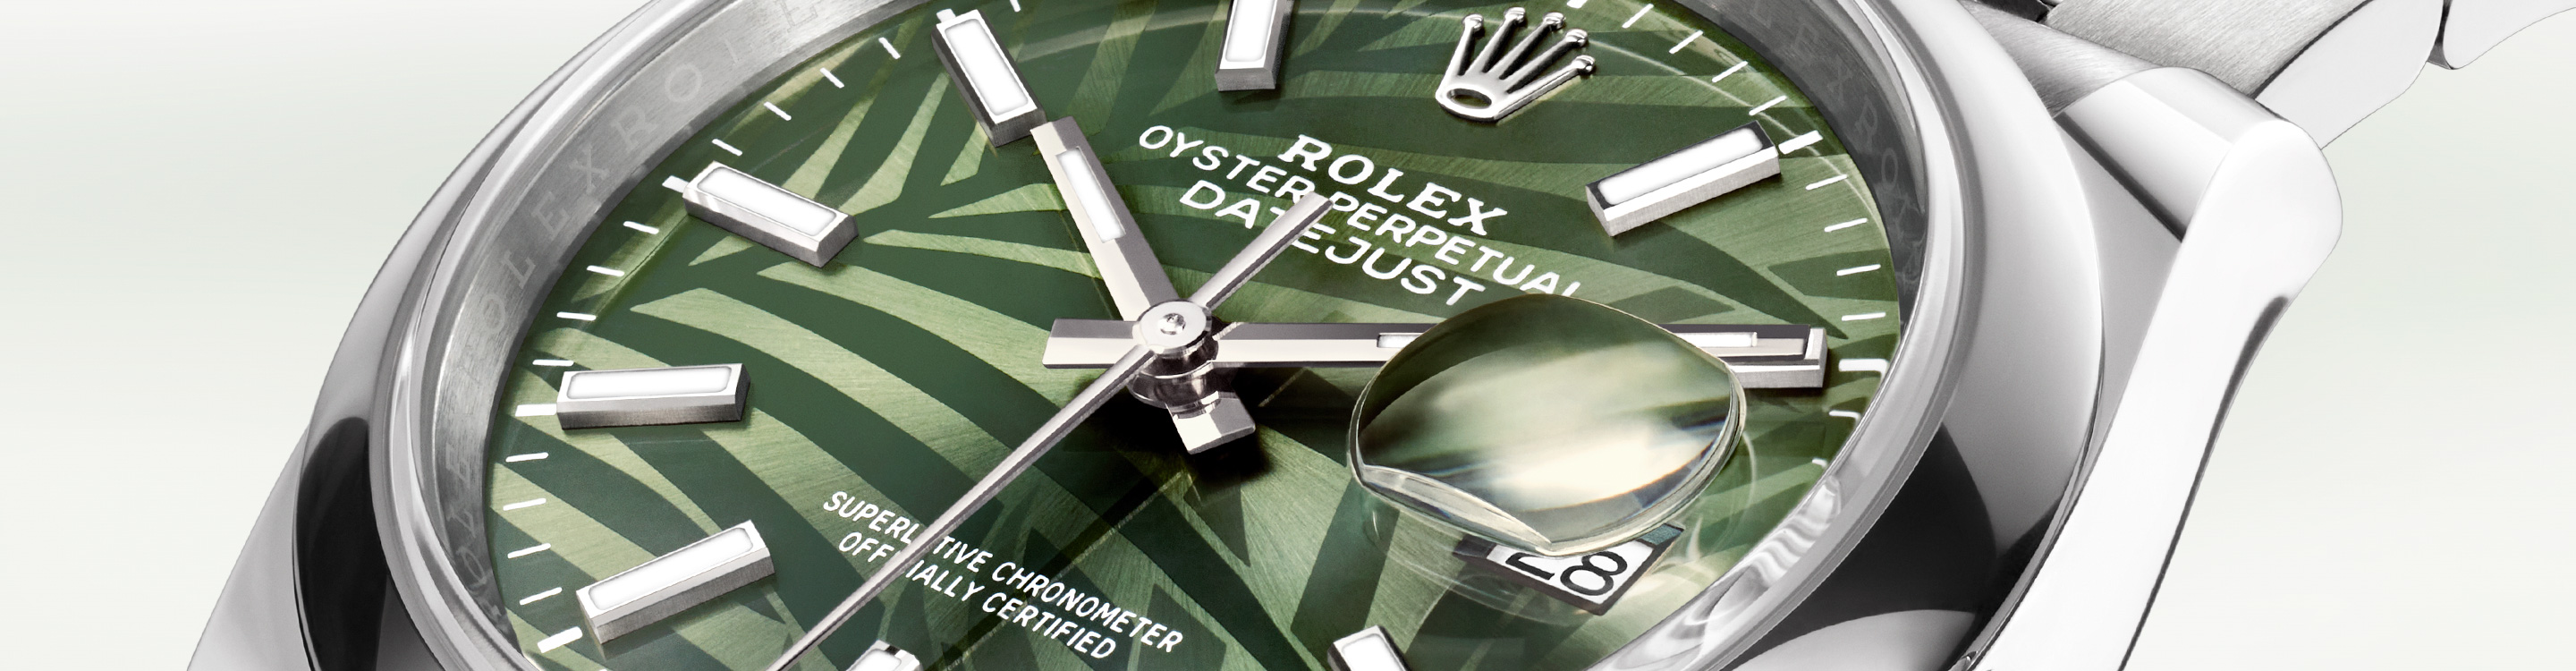 Esfera Reloj Rolex Oyster Perpetual en Joyería Chocrón Joyeros